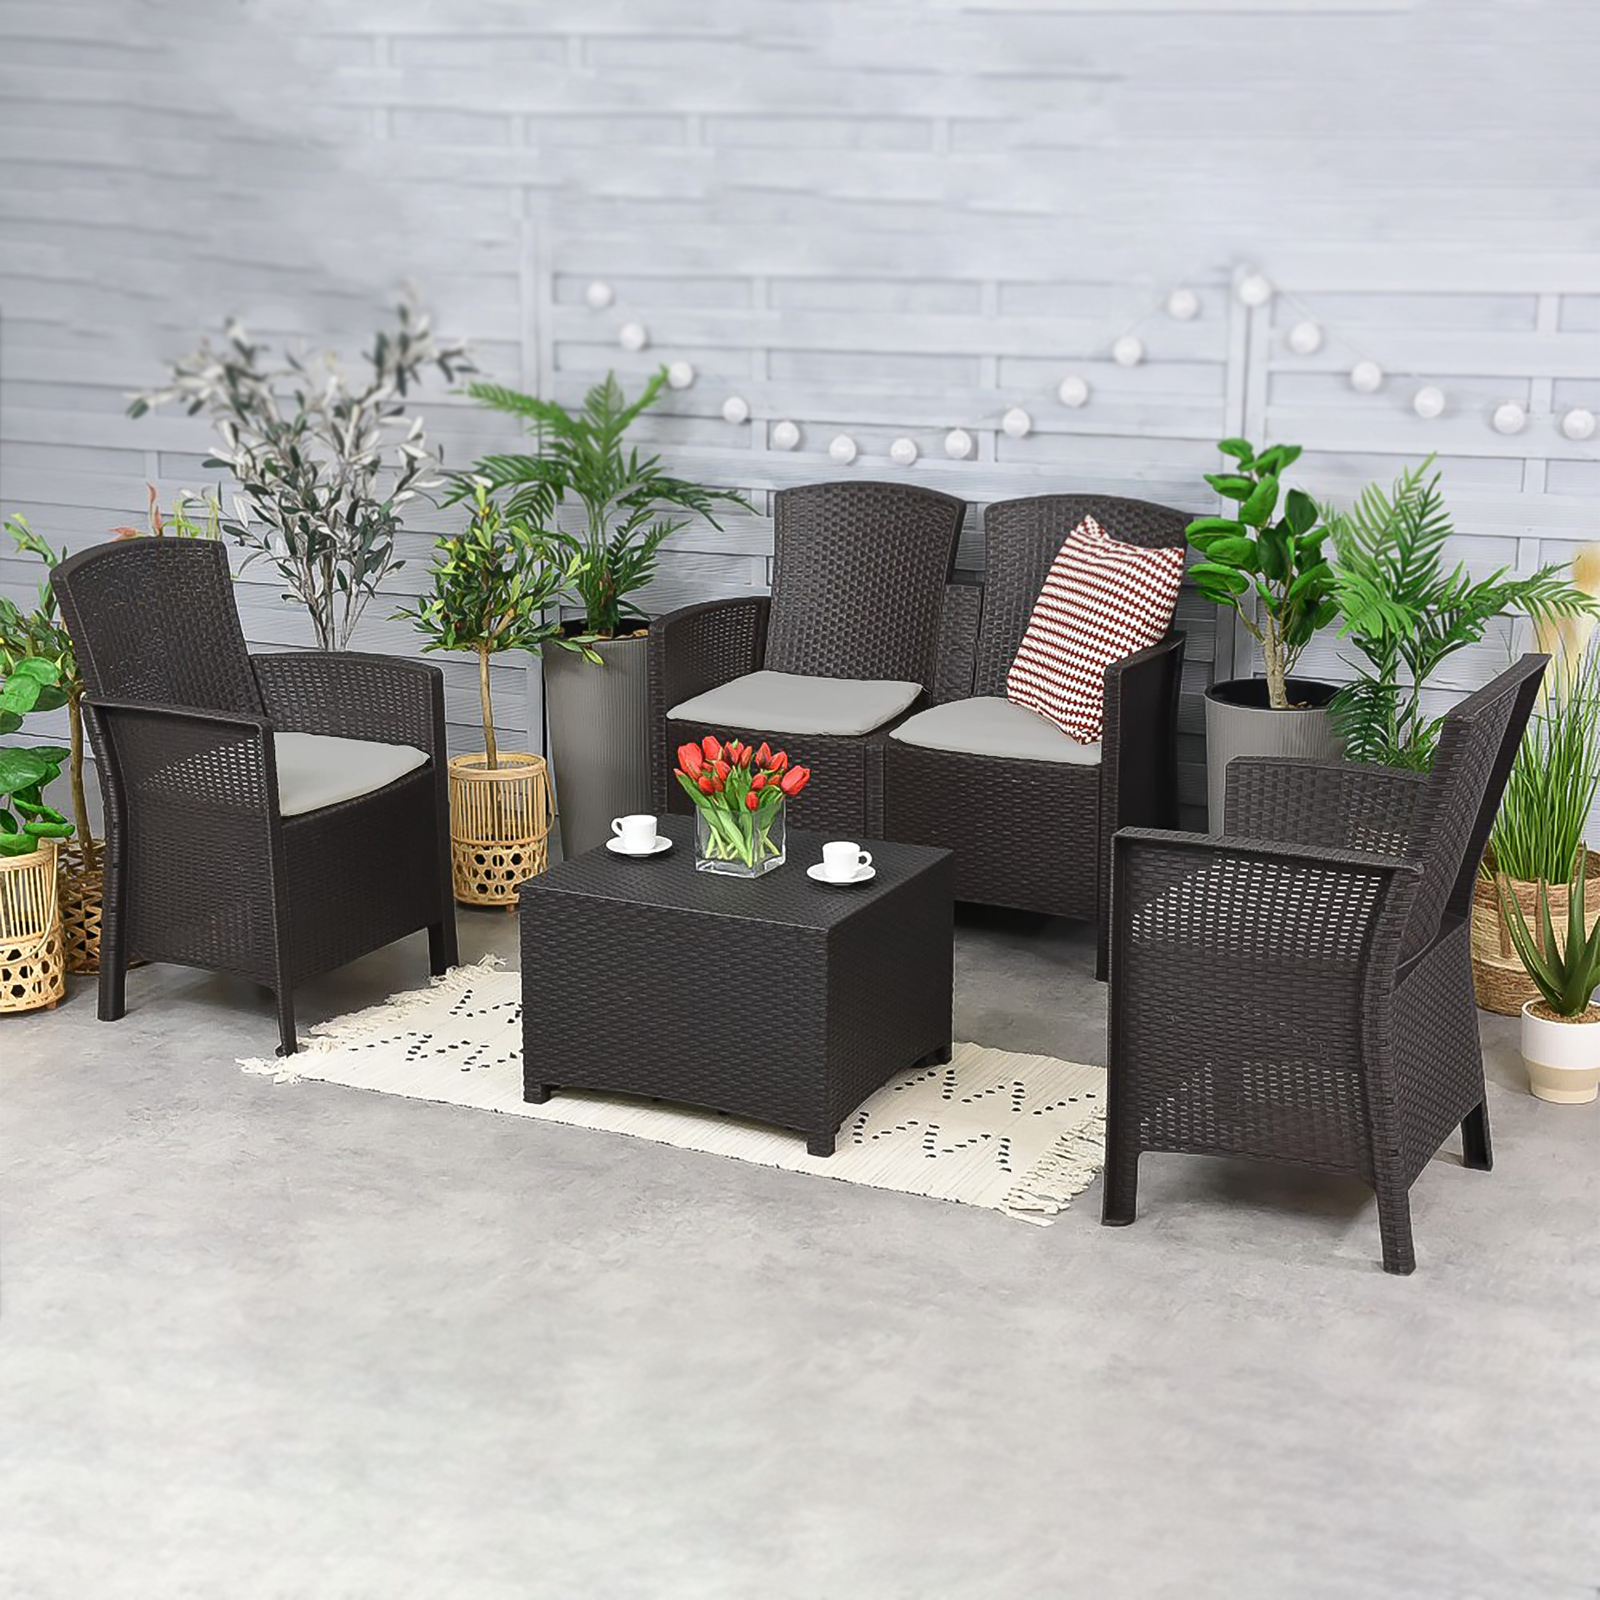 Salon de jardin Lido en résine rotin, table basse, canapé et 2 fauteuils avec coussins pour véranda extérieure